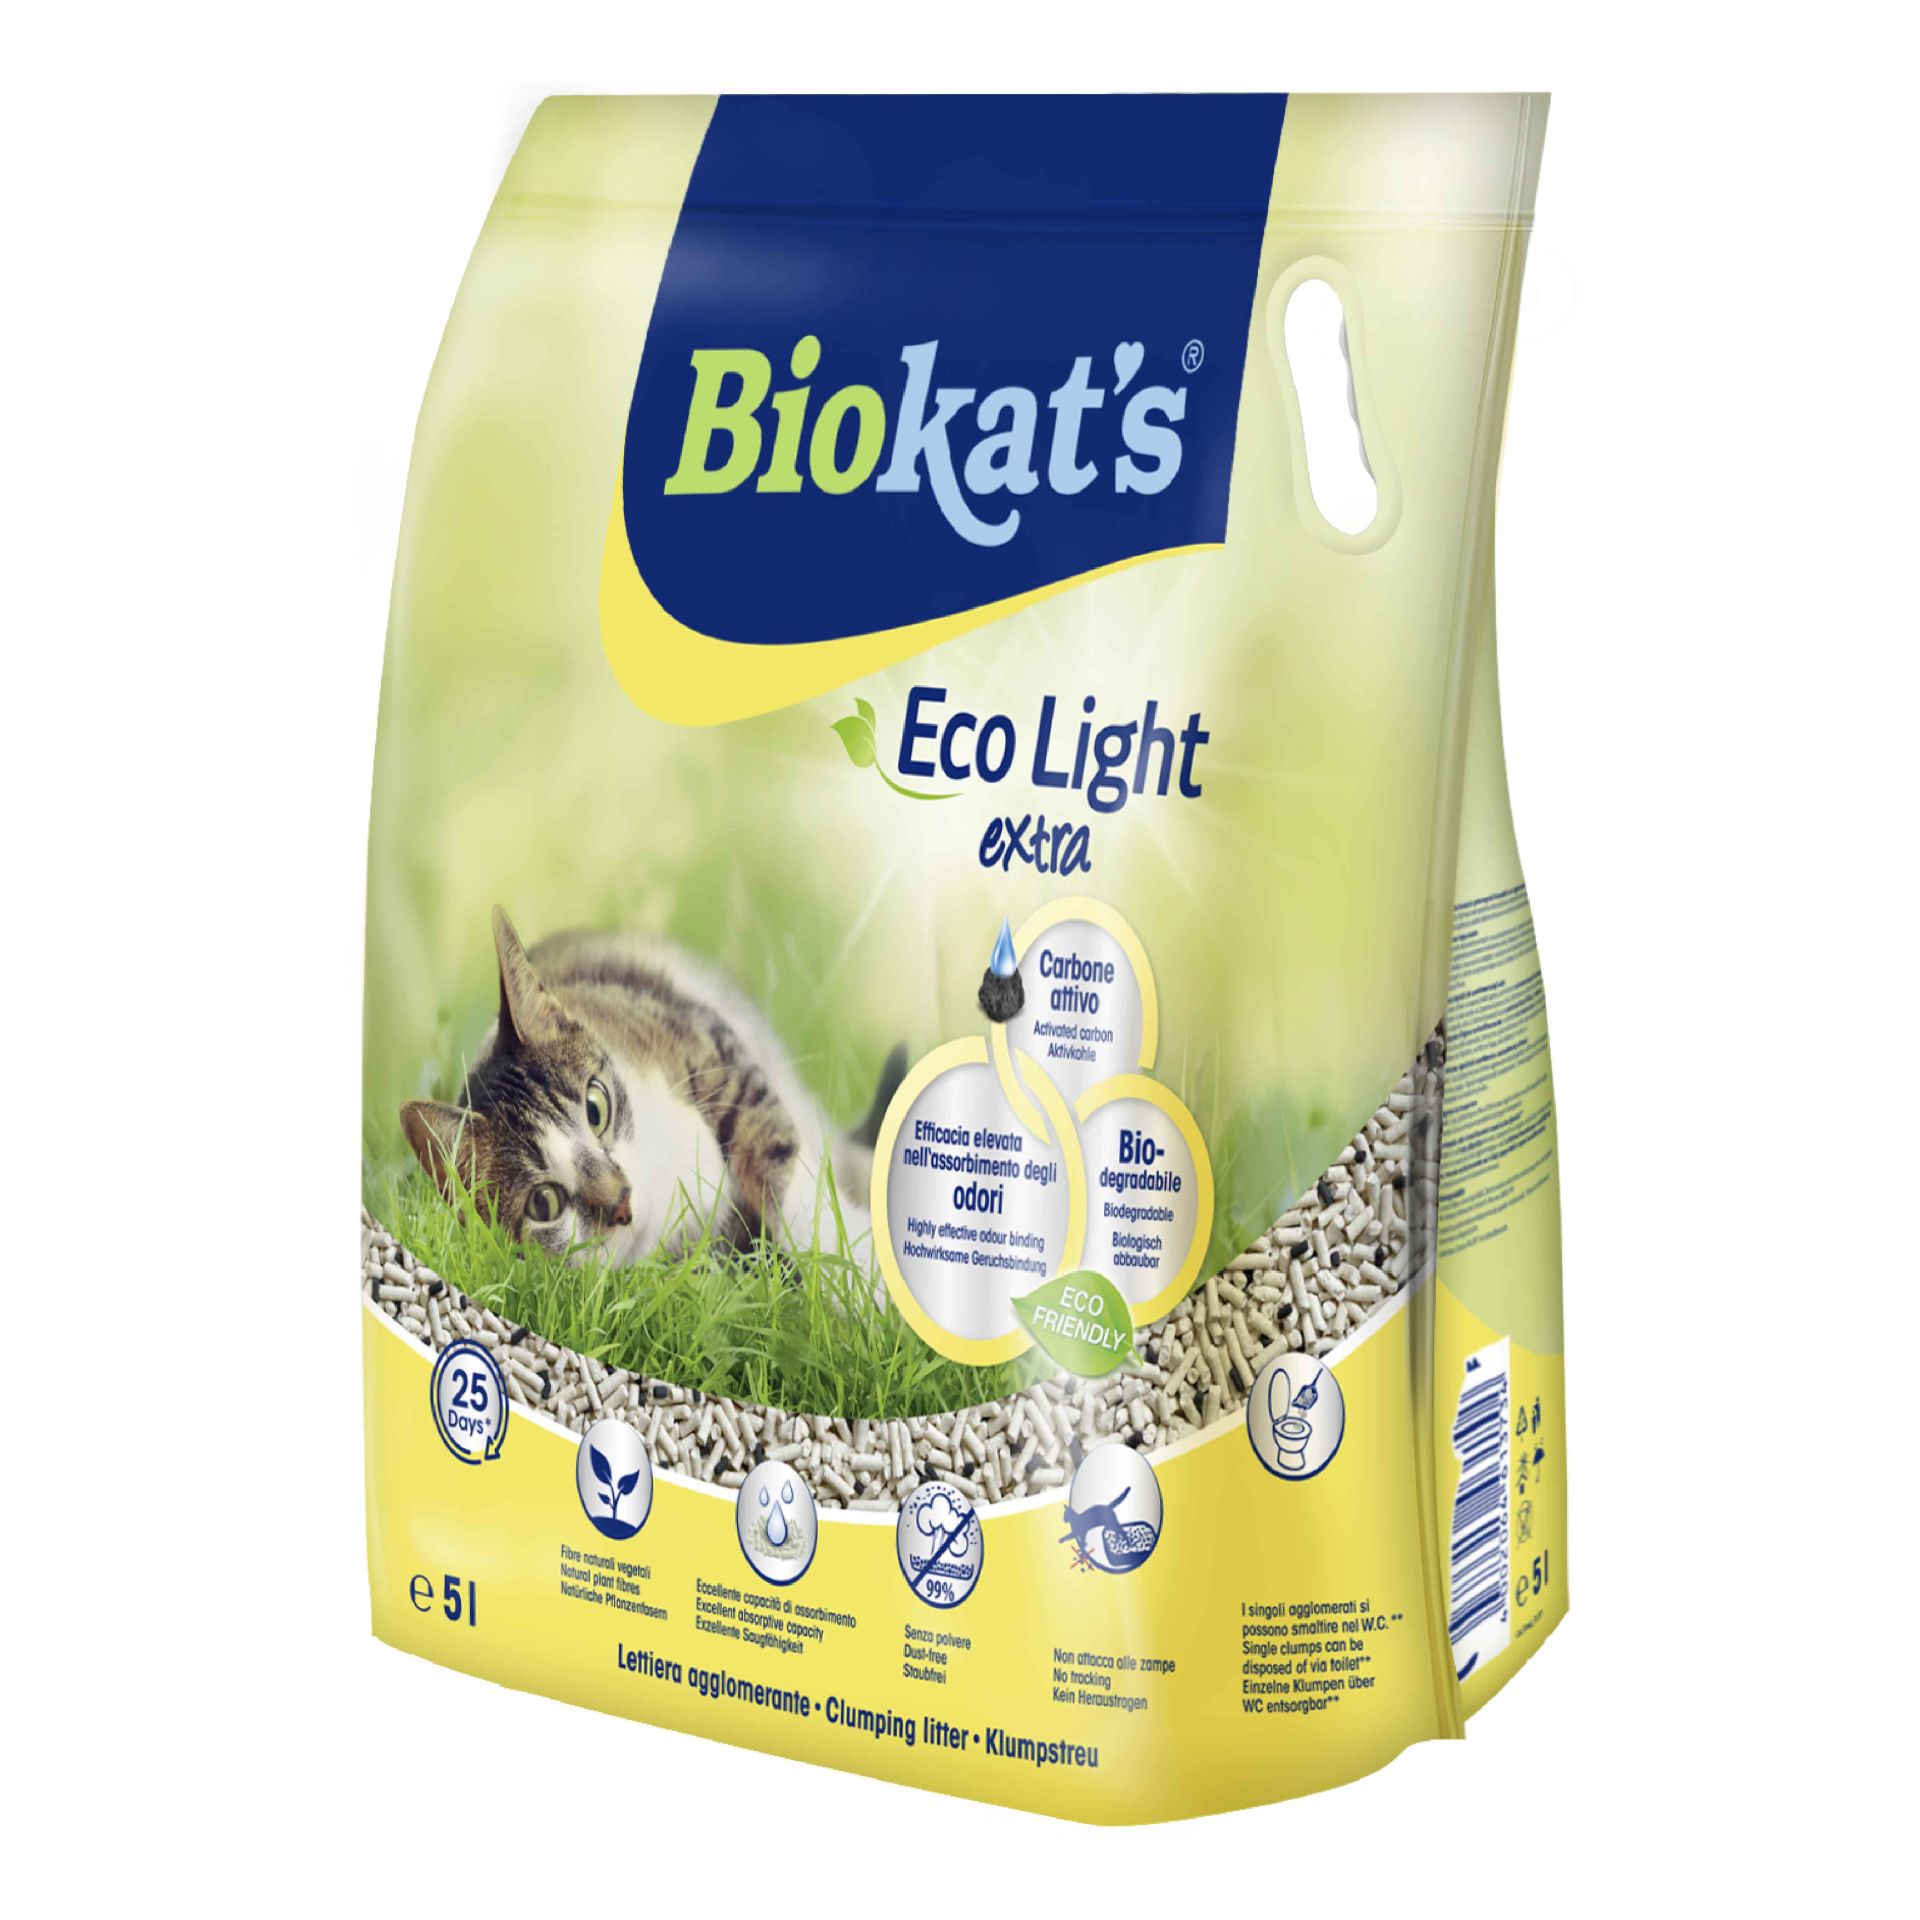 Biokat's Eco Light Extra Pelet Kedi Kumu 5 Lt